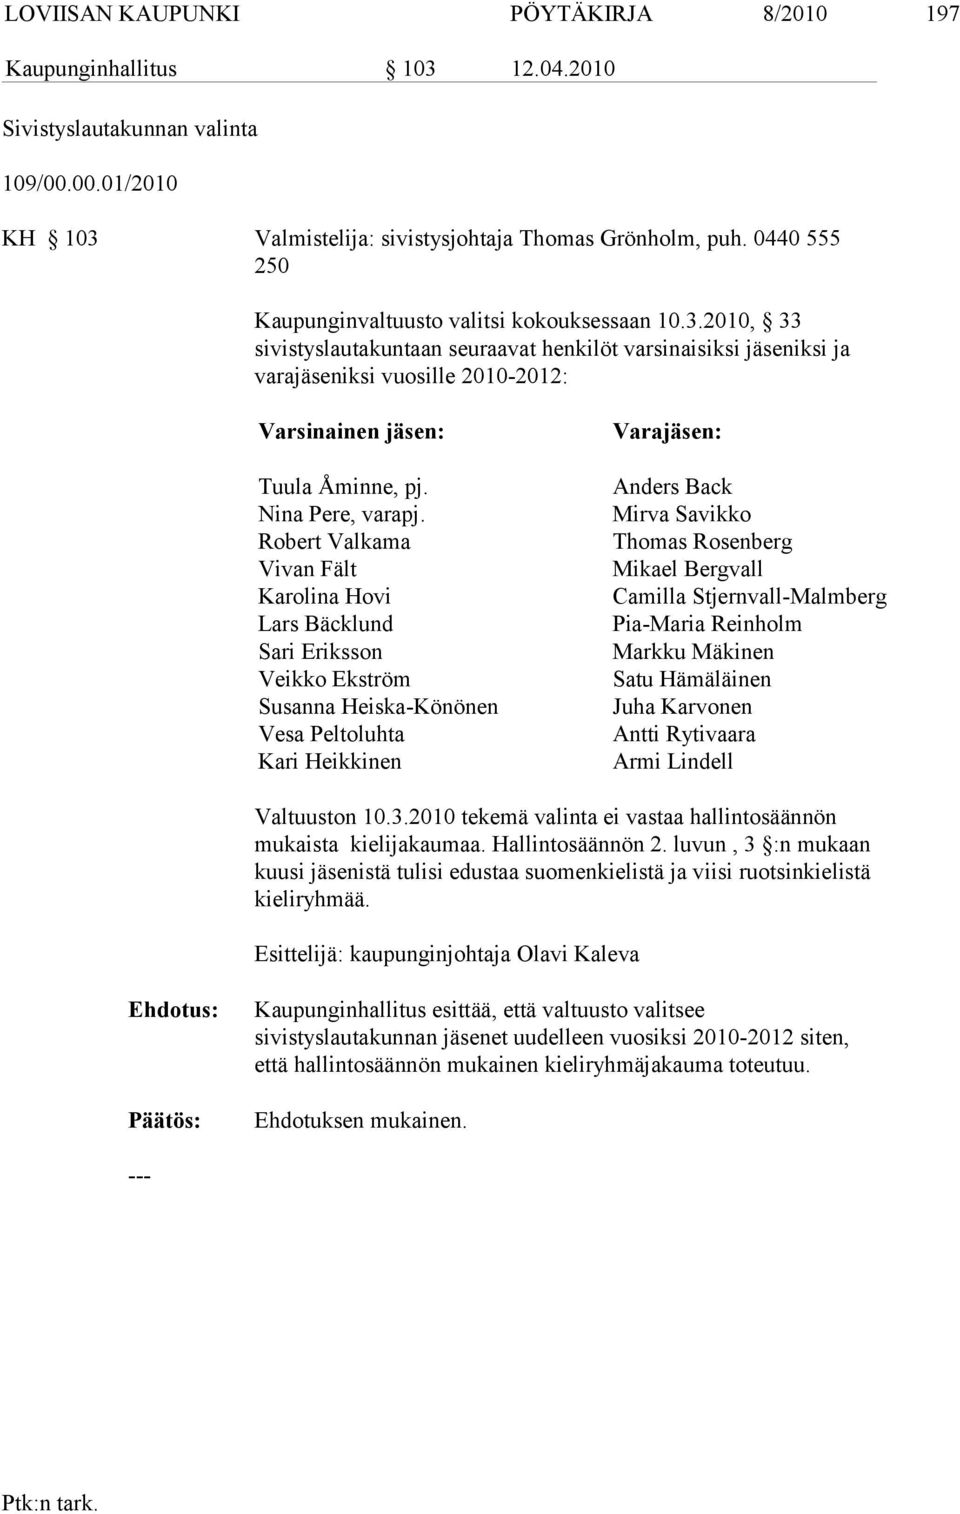 2010, 33 sivistyslauta kuntaan seuraavat henkilöt varsinaisiksi jäseniksi ja varajäseniksi vuosille 2010-2012: Varsinainen jäsen: Tuula Åminne, pj. Nina Pere, varapj.